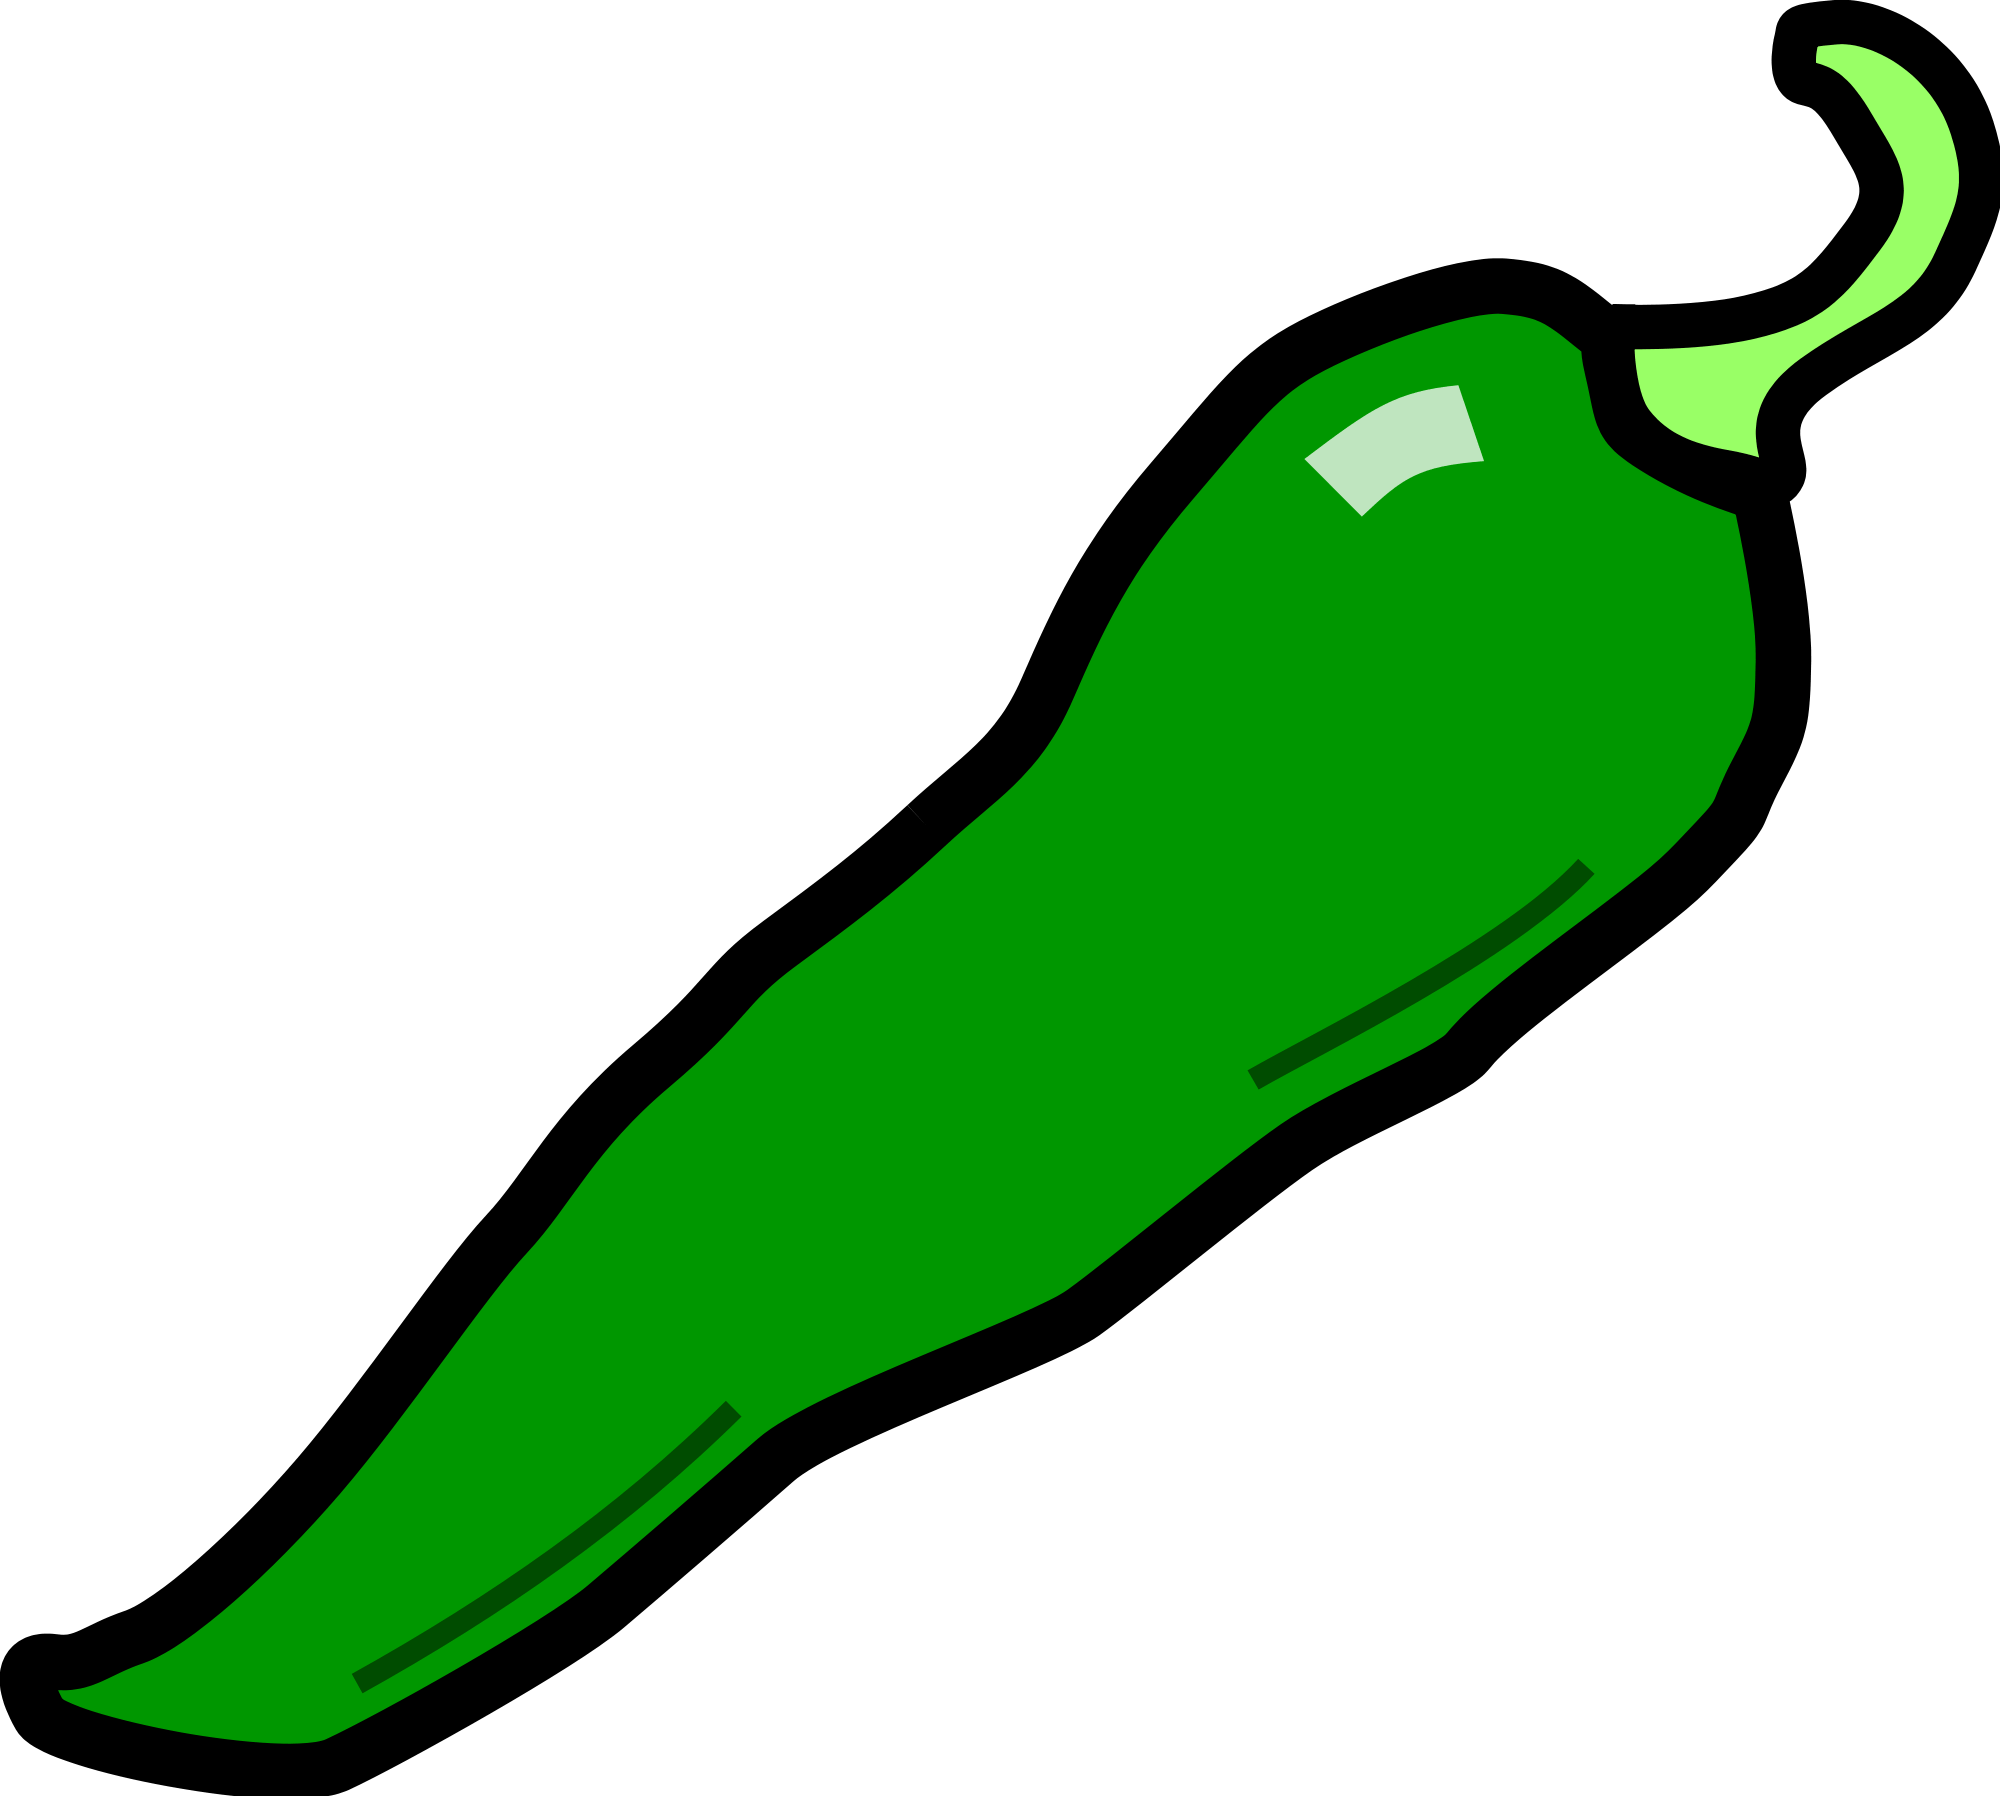 green hot pepper clipart